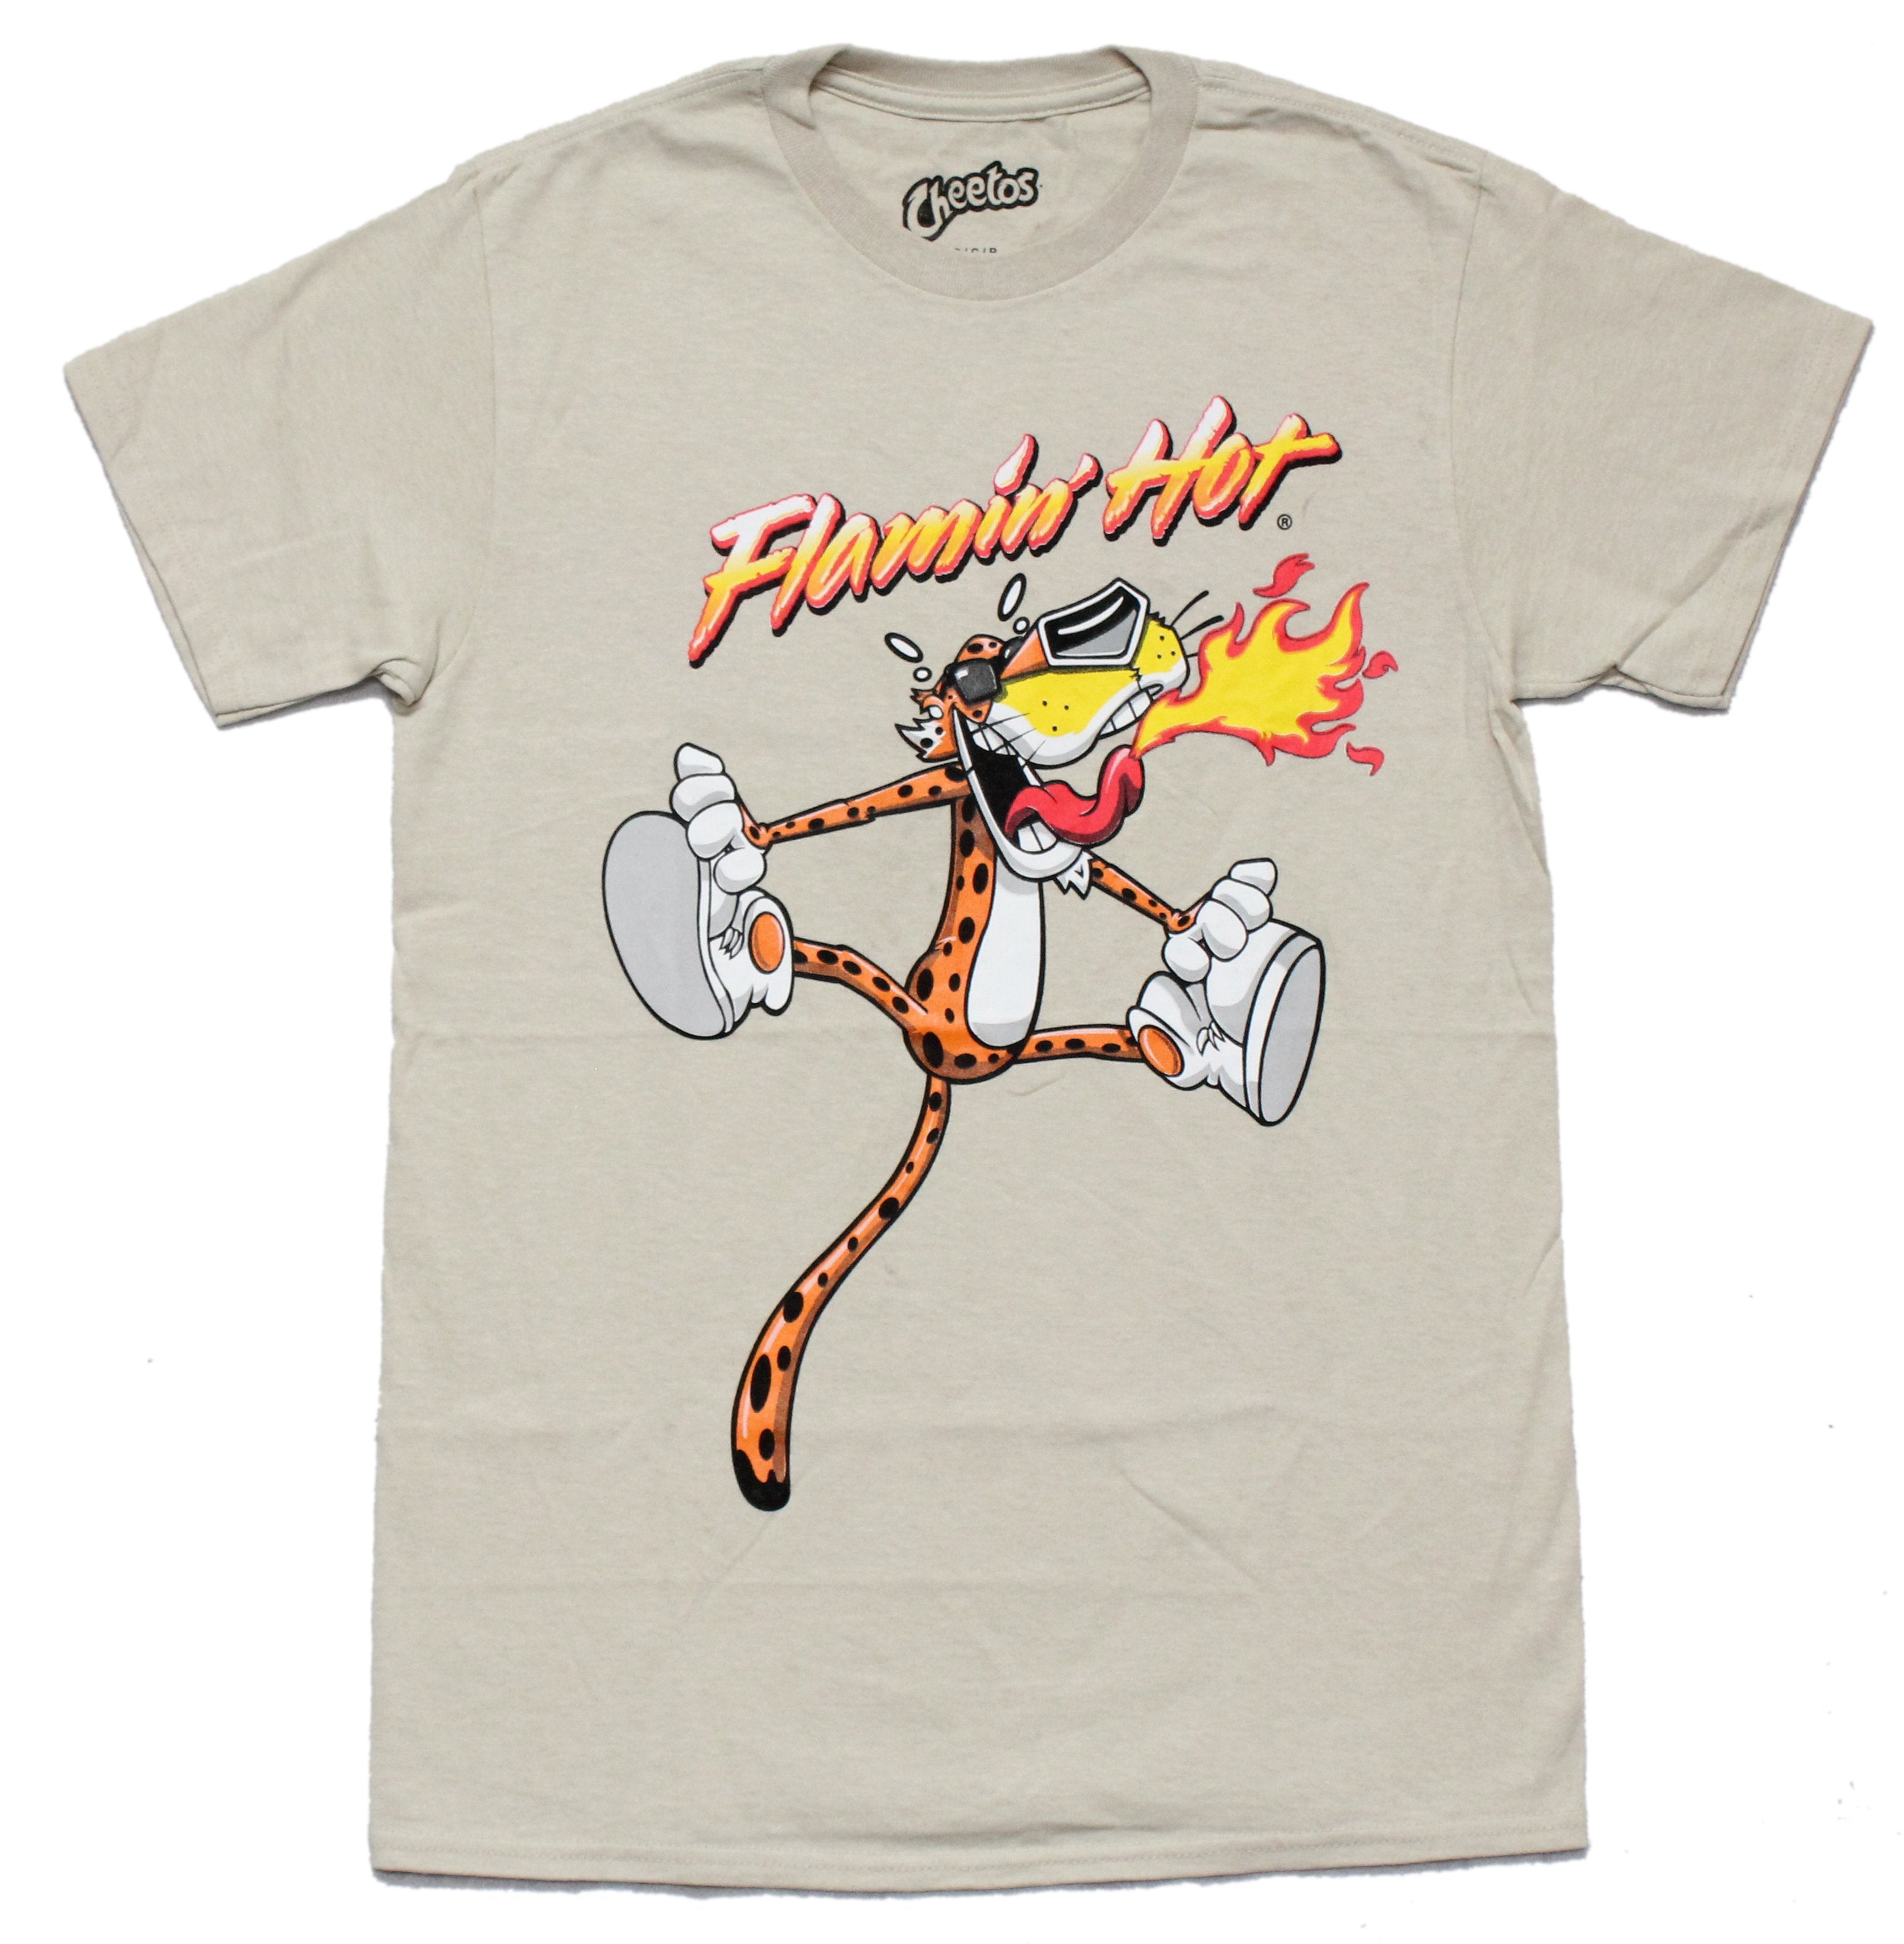 Cheetos Flamin Hot Mens T-Shirt - Ft. Chester Cheetah